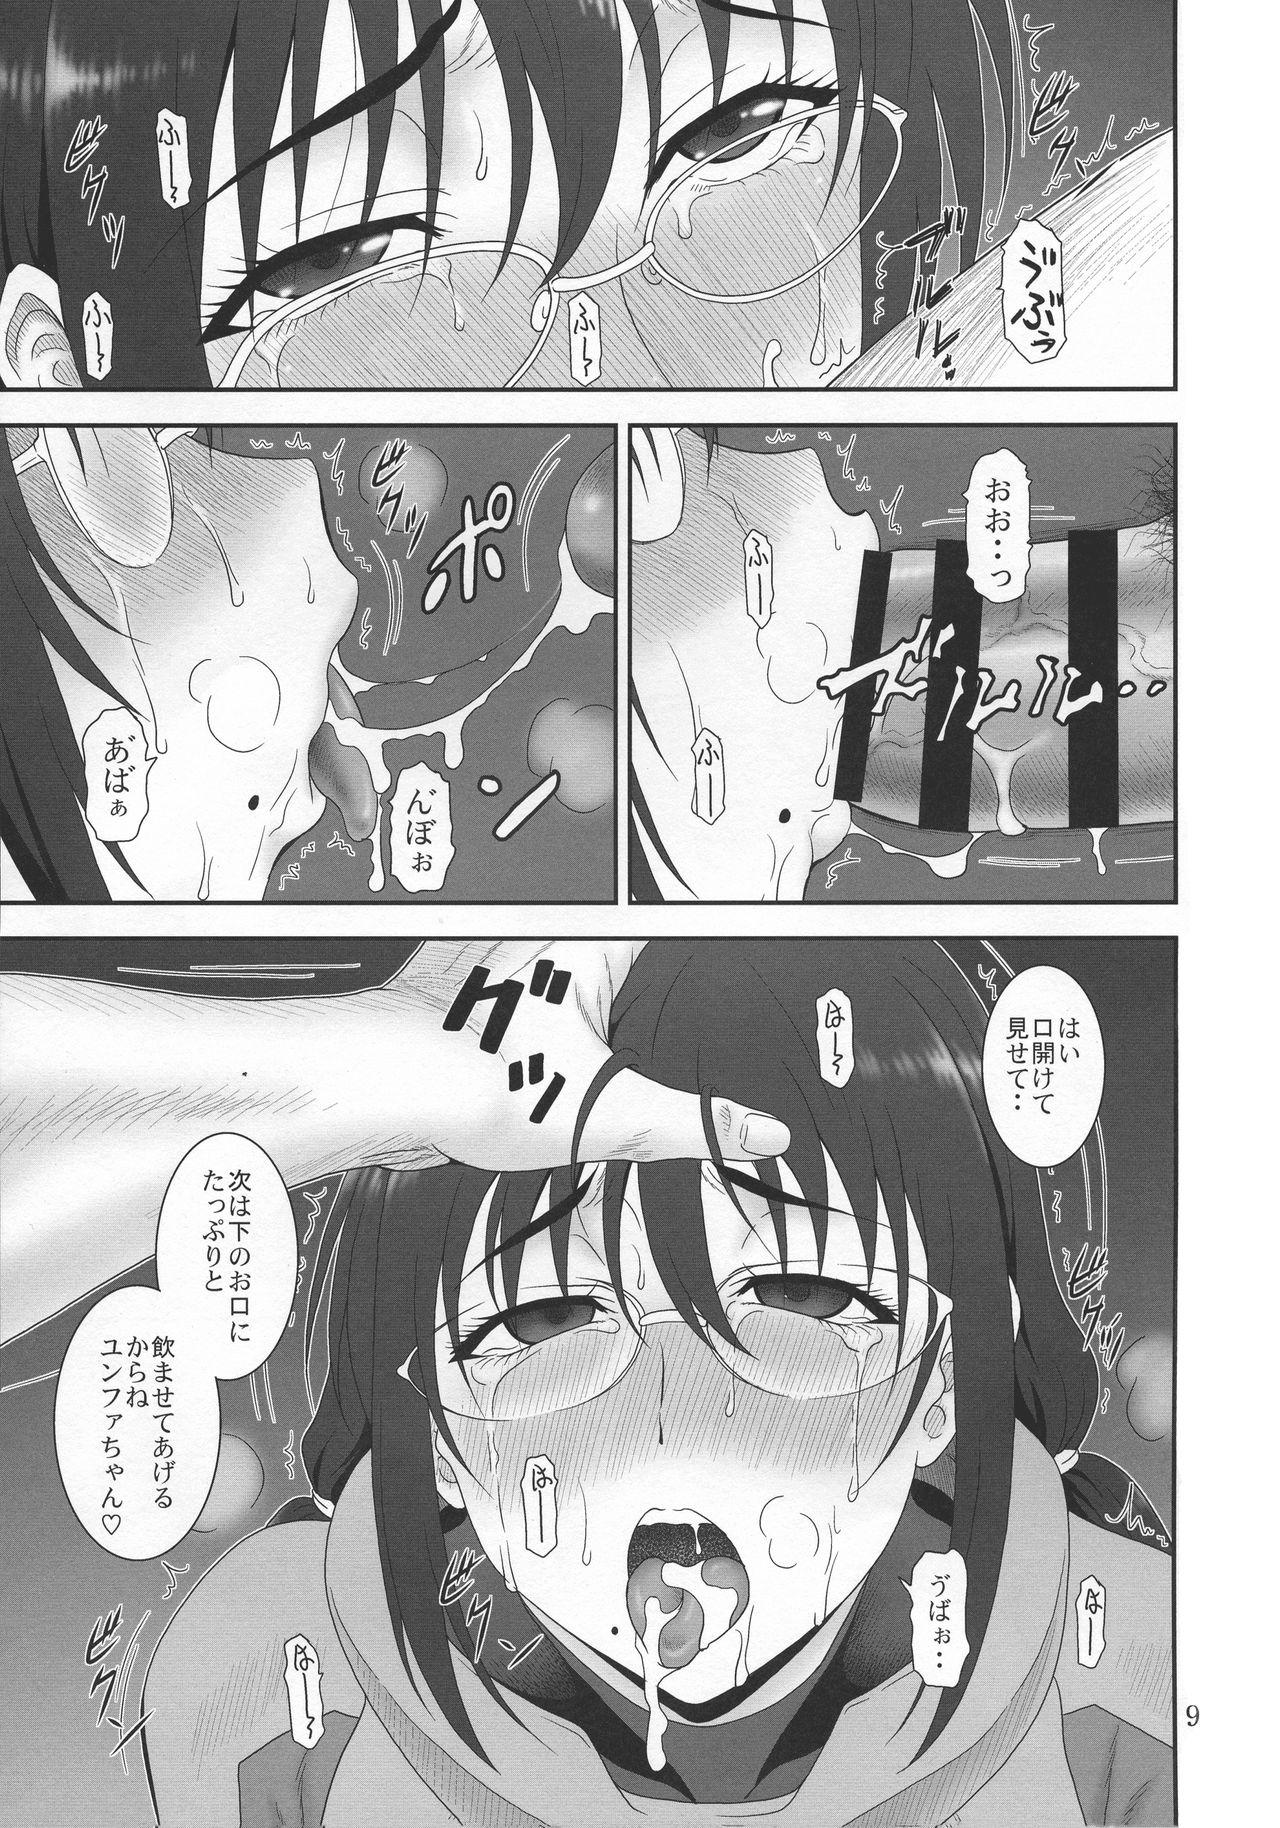 Ngentot Kyuukyou no Wakusei - Planet of plight - Kanata no astra Young Tits - Page 8